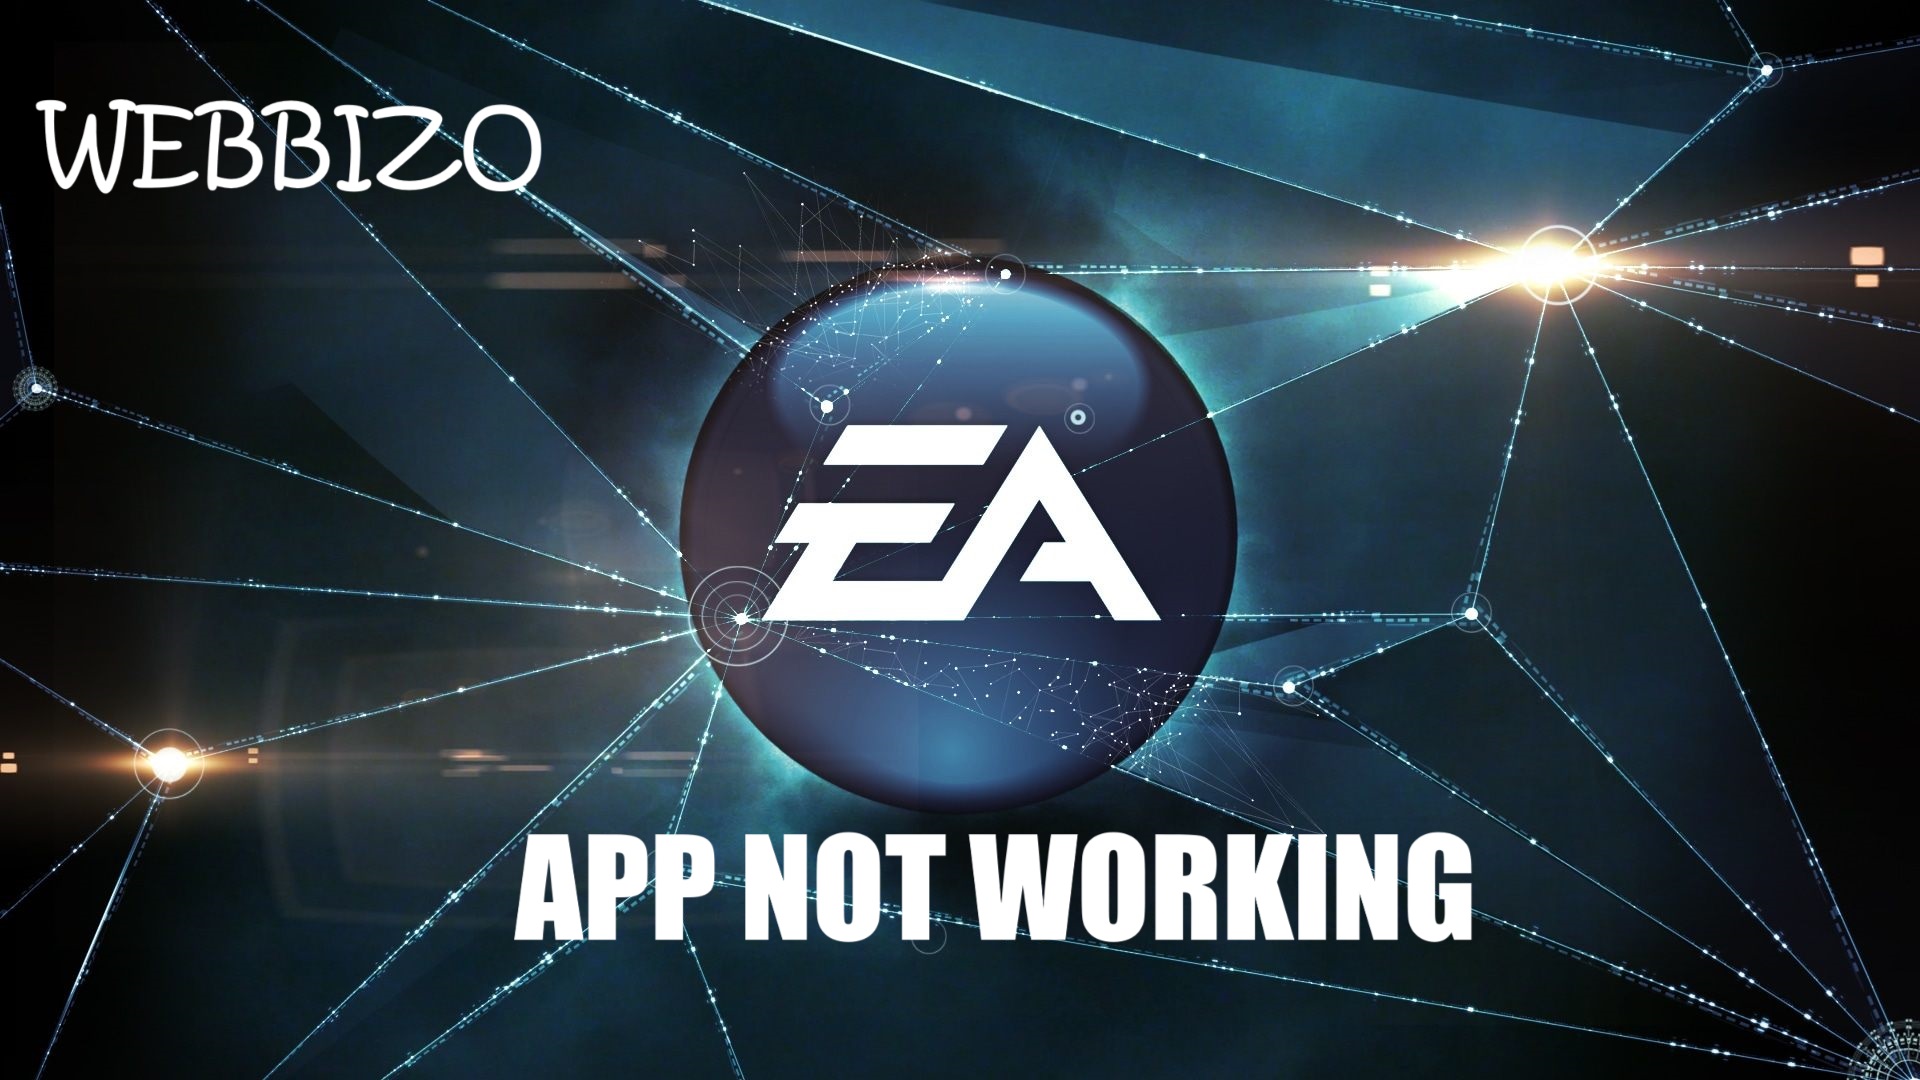 EA App Not Working